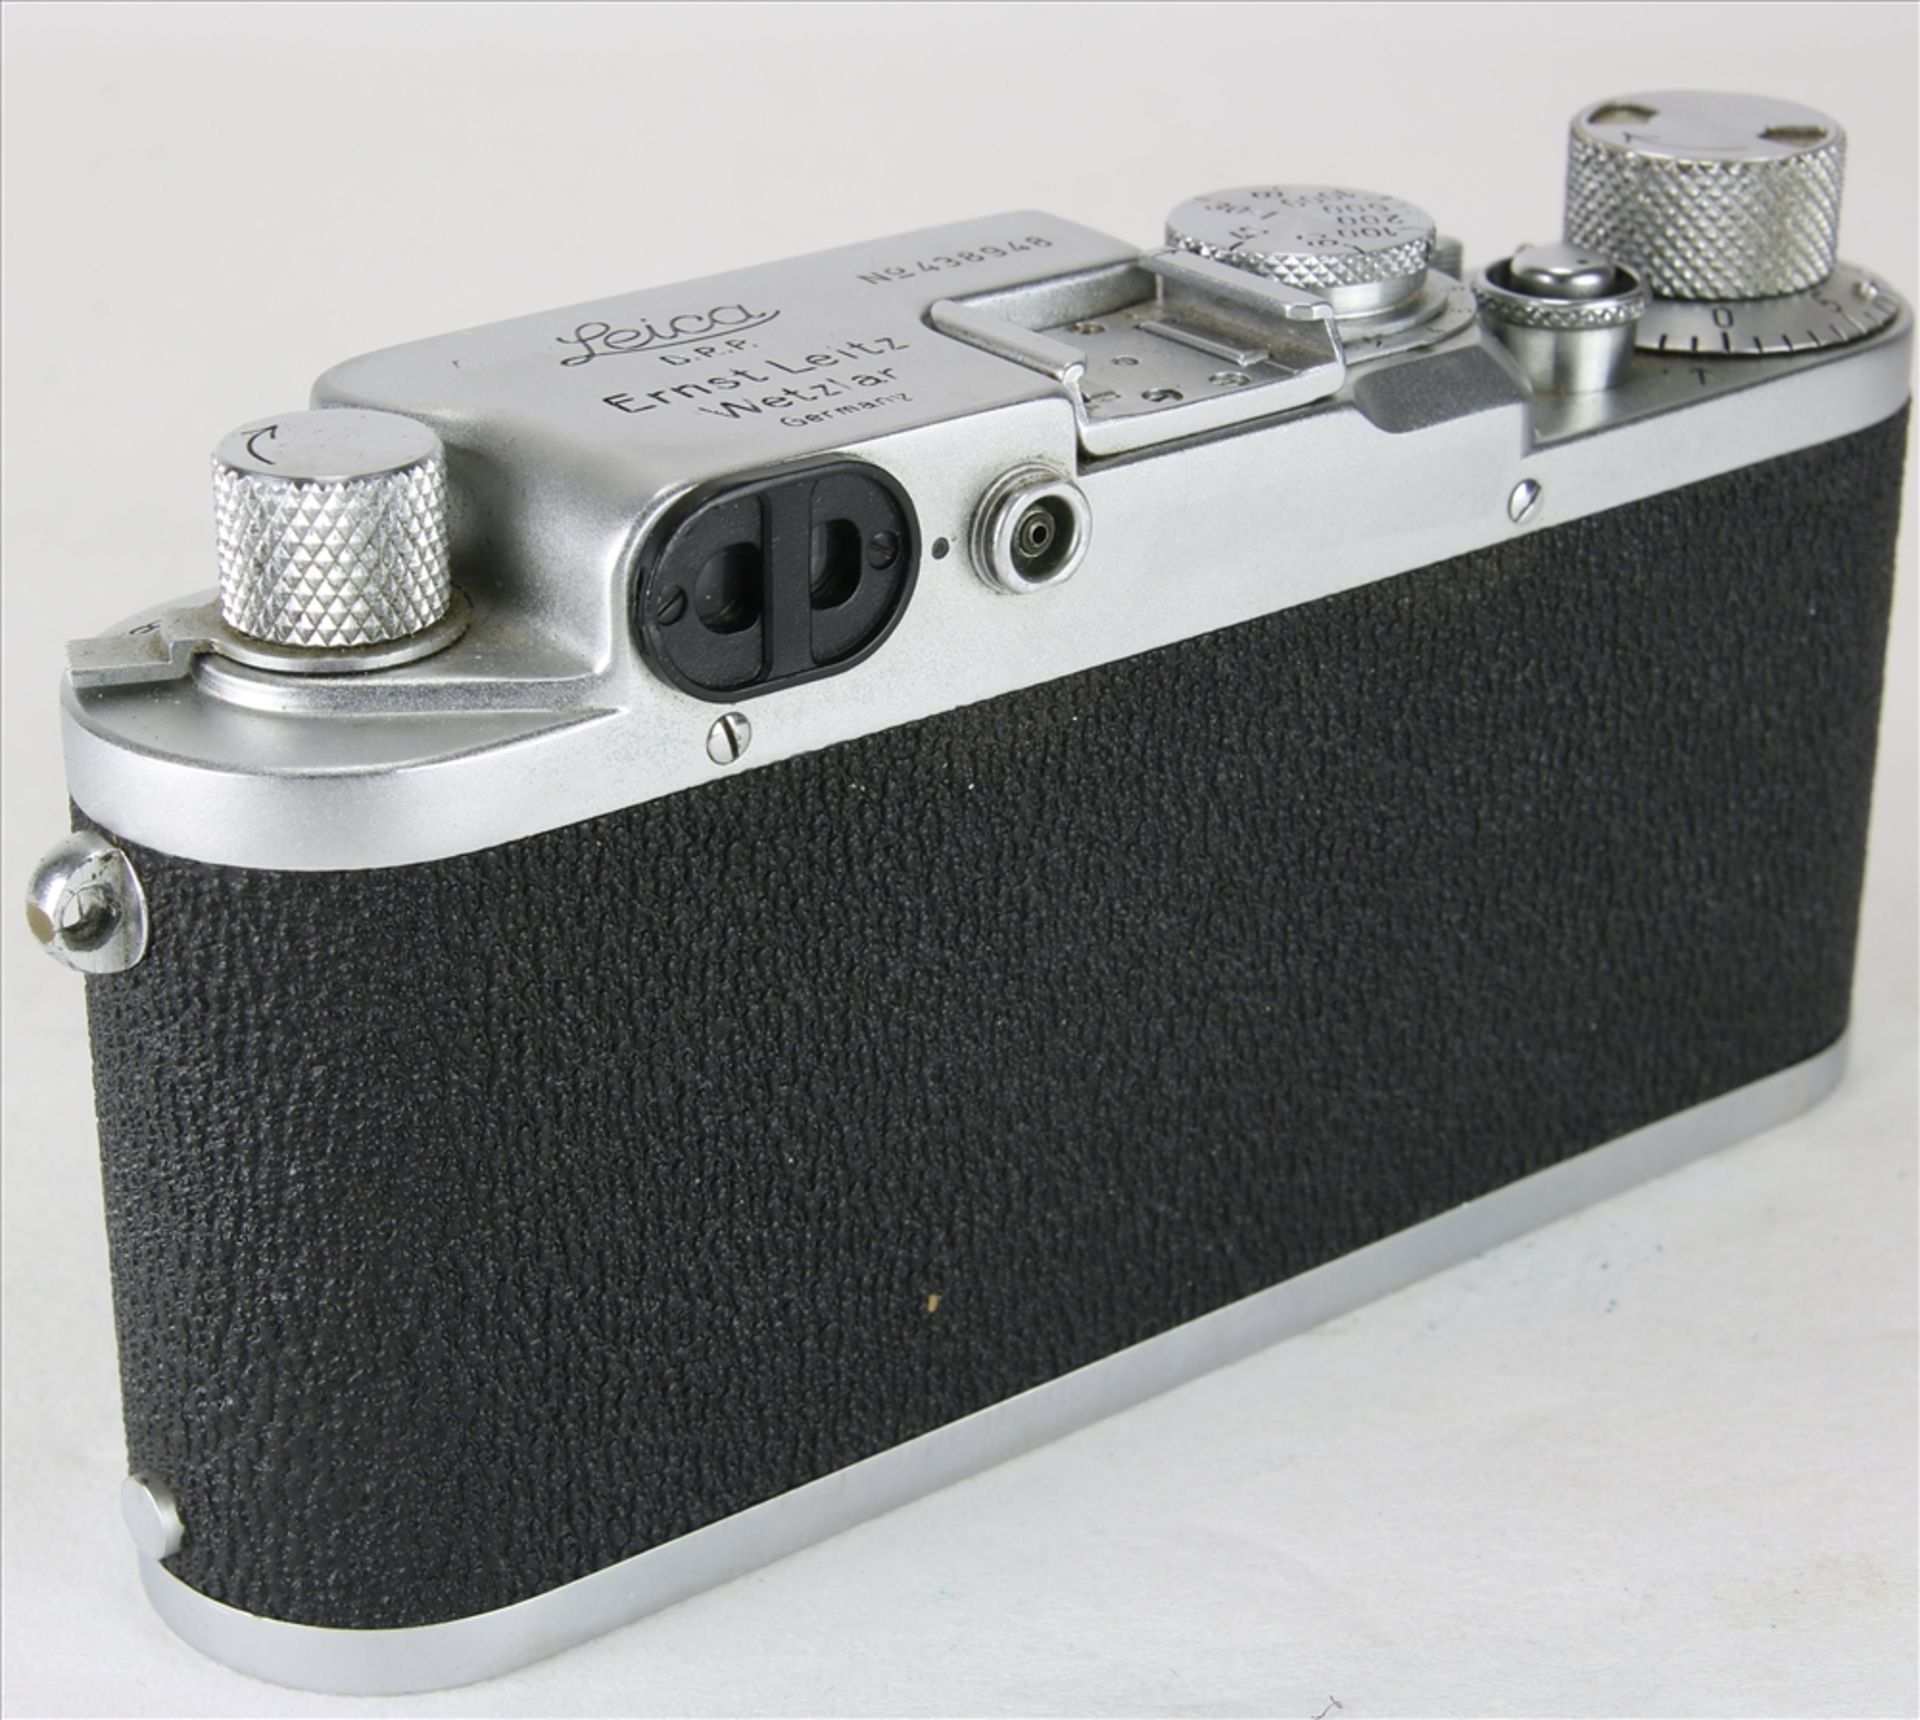 Leica III f vintage Kamera Ernst Leitz GmbH Wetzlar 1946/47. Nummer 438948. Elmar f=3,5, 1:3,5 - Bild 4 aus 6